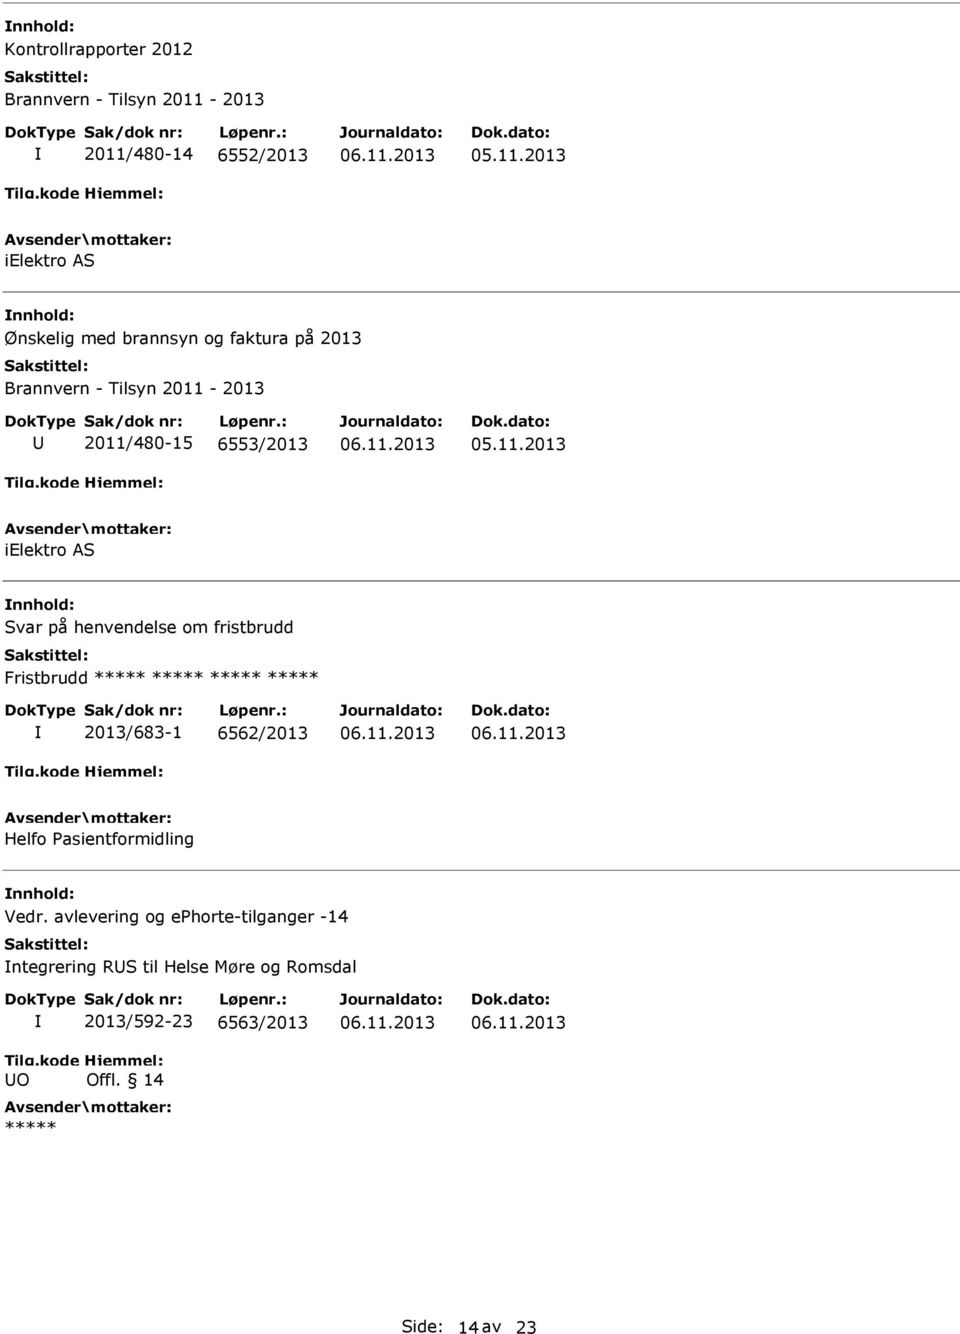 henvendelse om fristbrudd Fristbrudd 2013/683-1 6562/2013 Helfo asientformidling Vedr.